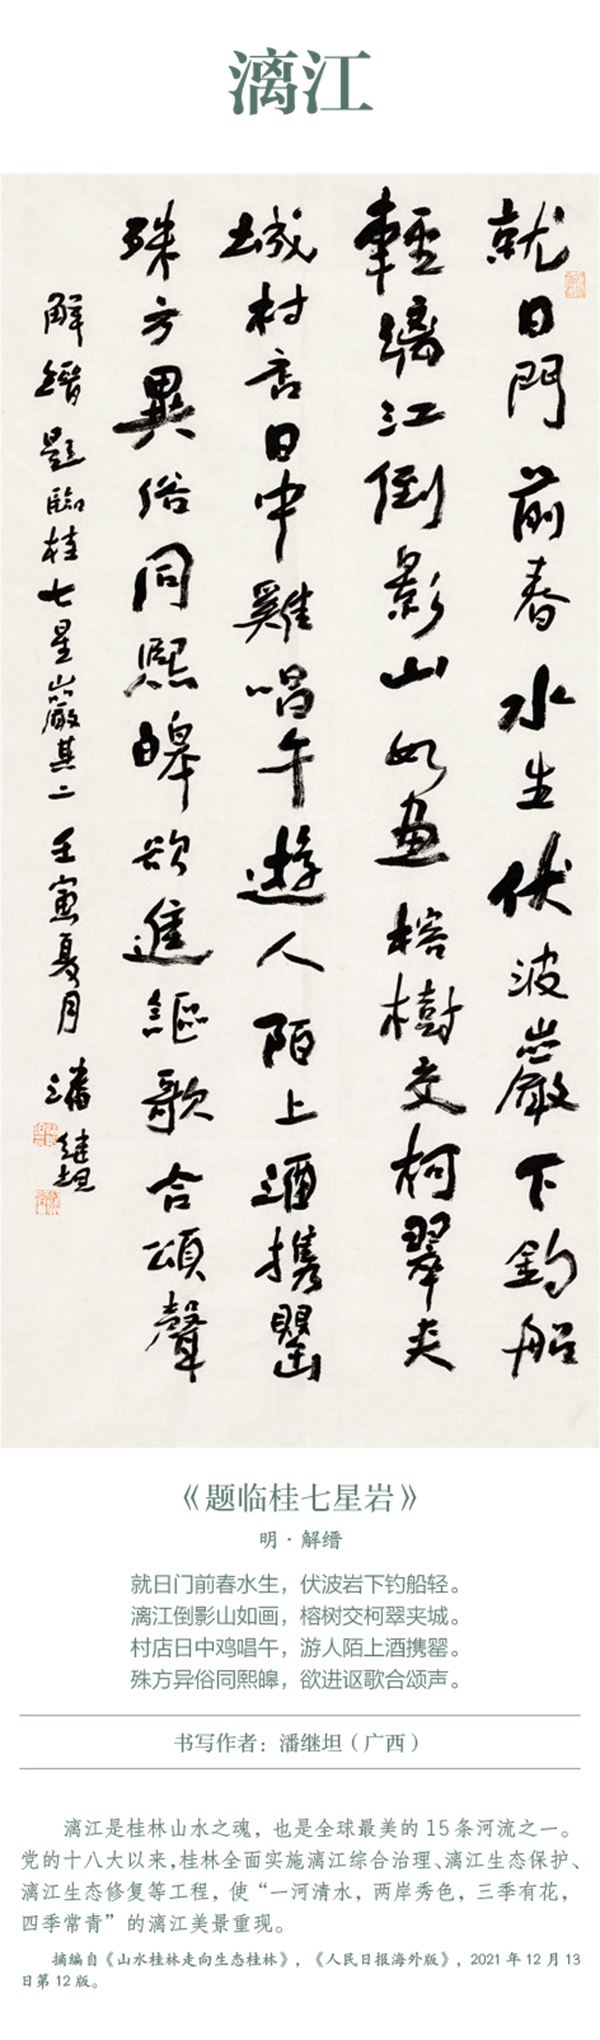 中國書協主題創作書法系列展——美麗中國插圖11題字網